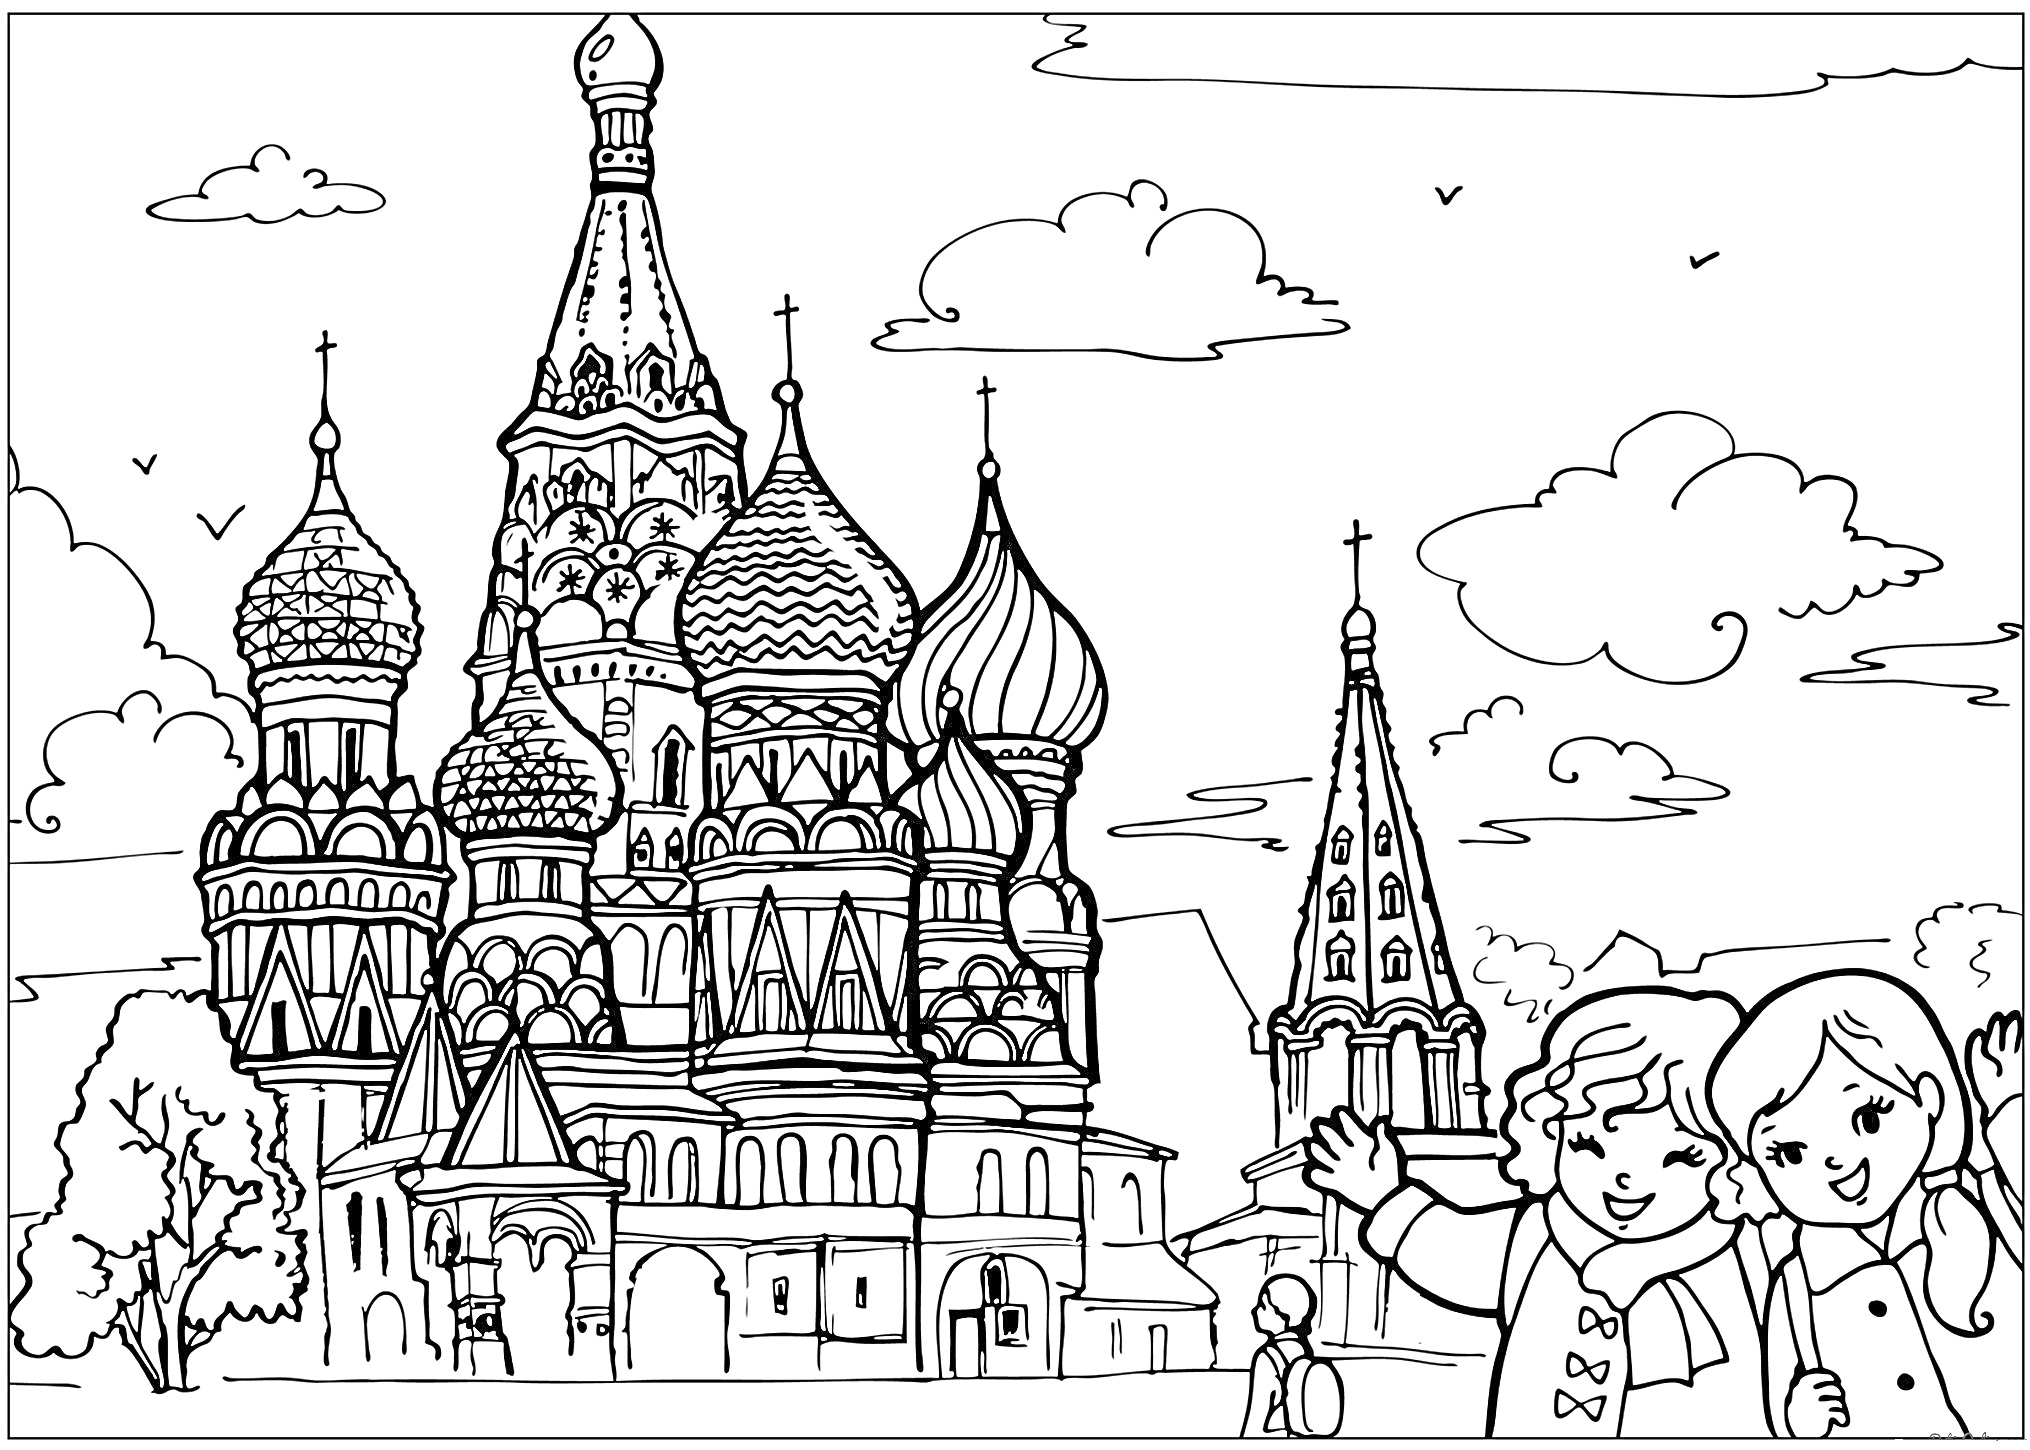 Кремль с собором Василия Блаженного и детьми на переднем плане